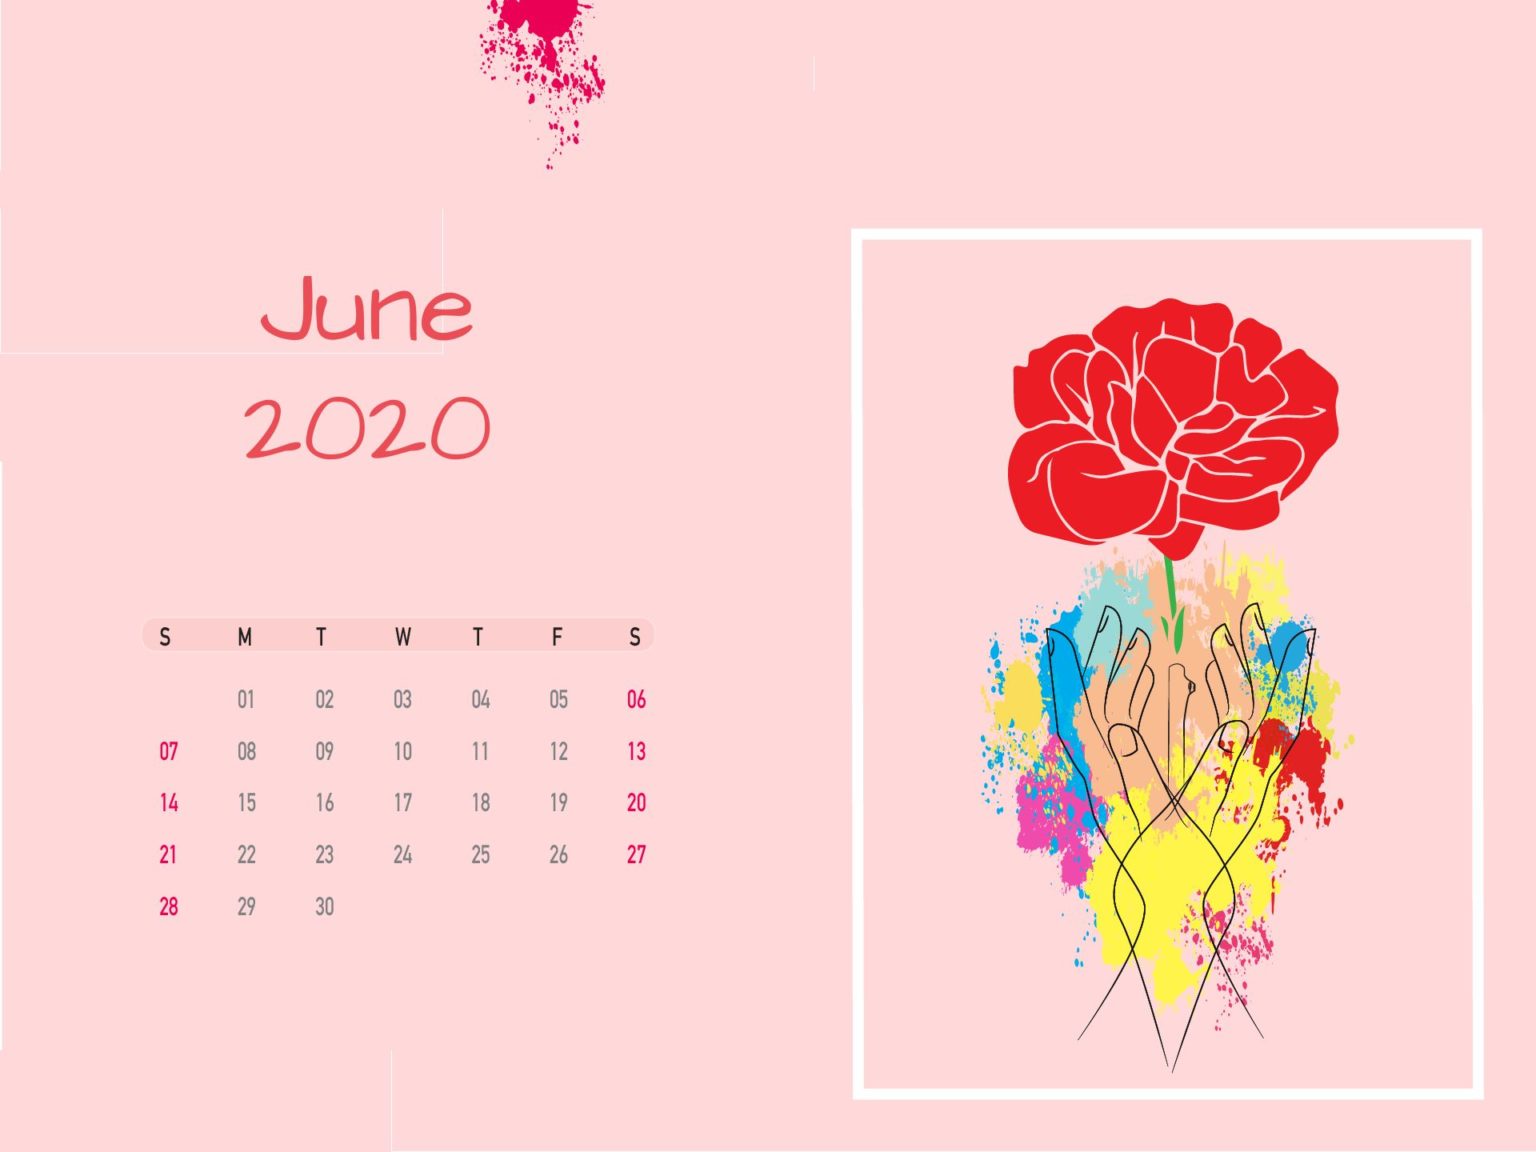 June 2020 Flower Calendar Wallpaper